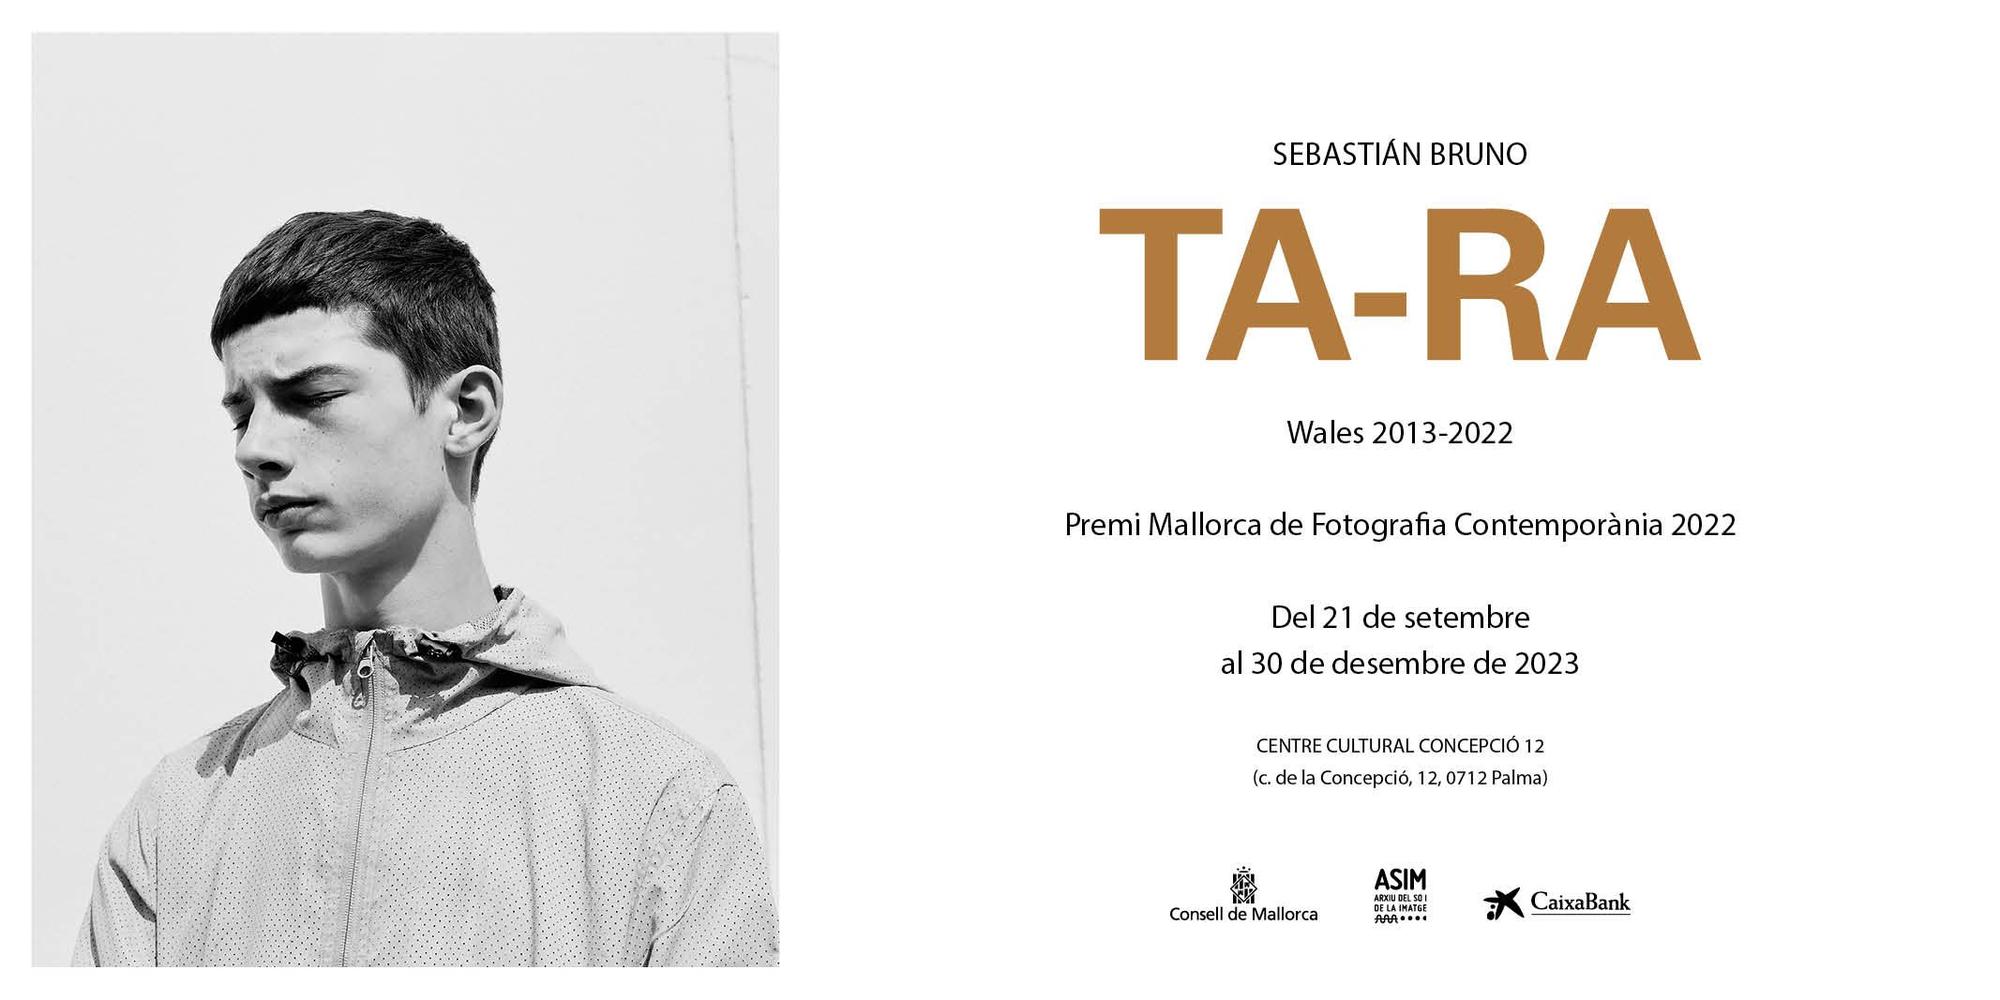 'TA-RA', de Sebastián Bruno, Premi Mallorca Fotografia Contemporània 2022, se expone por la Nit de l'Art de Palma